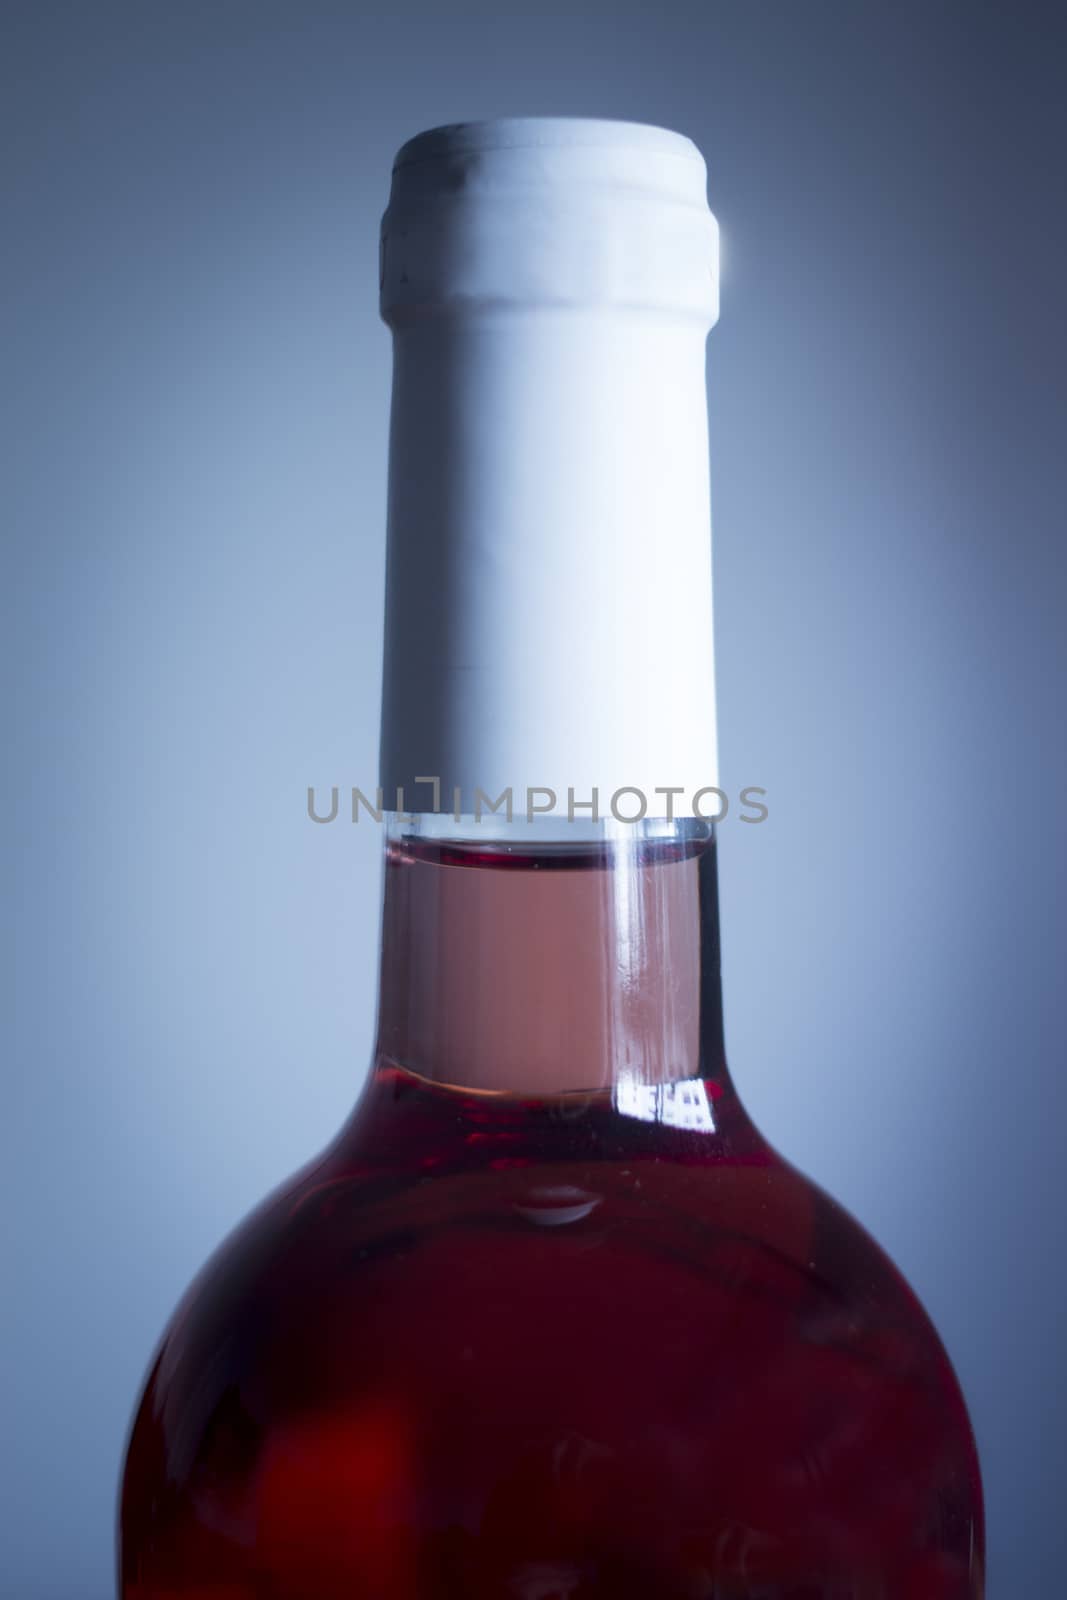 Rose wine bottle studio isolated close-up plain blue background by edwardolive